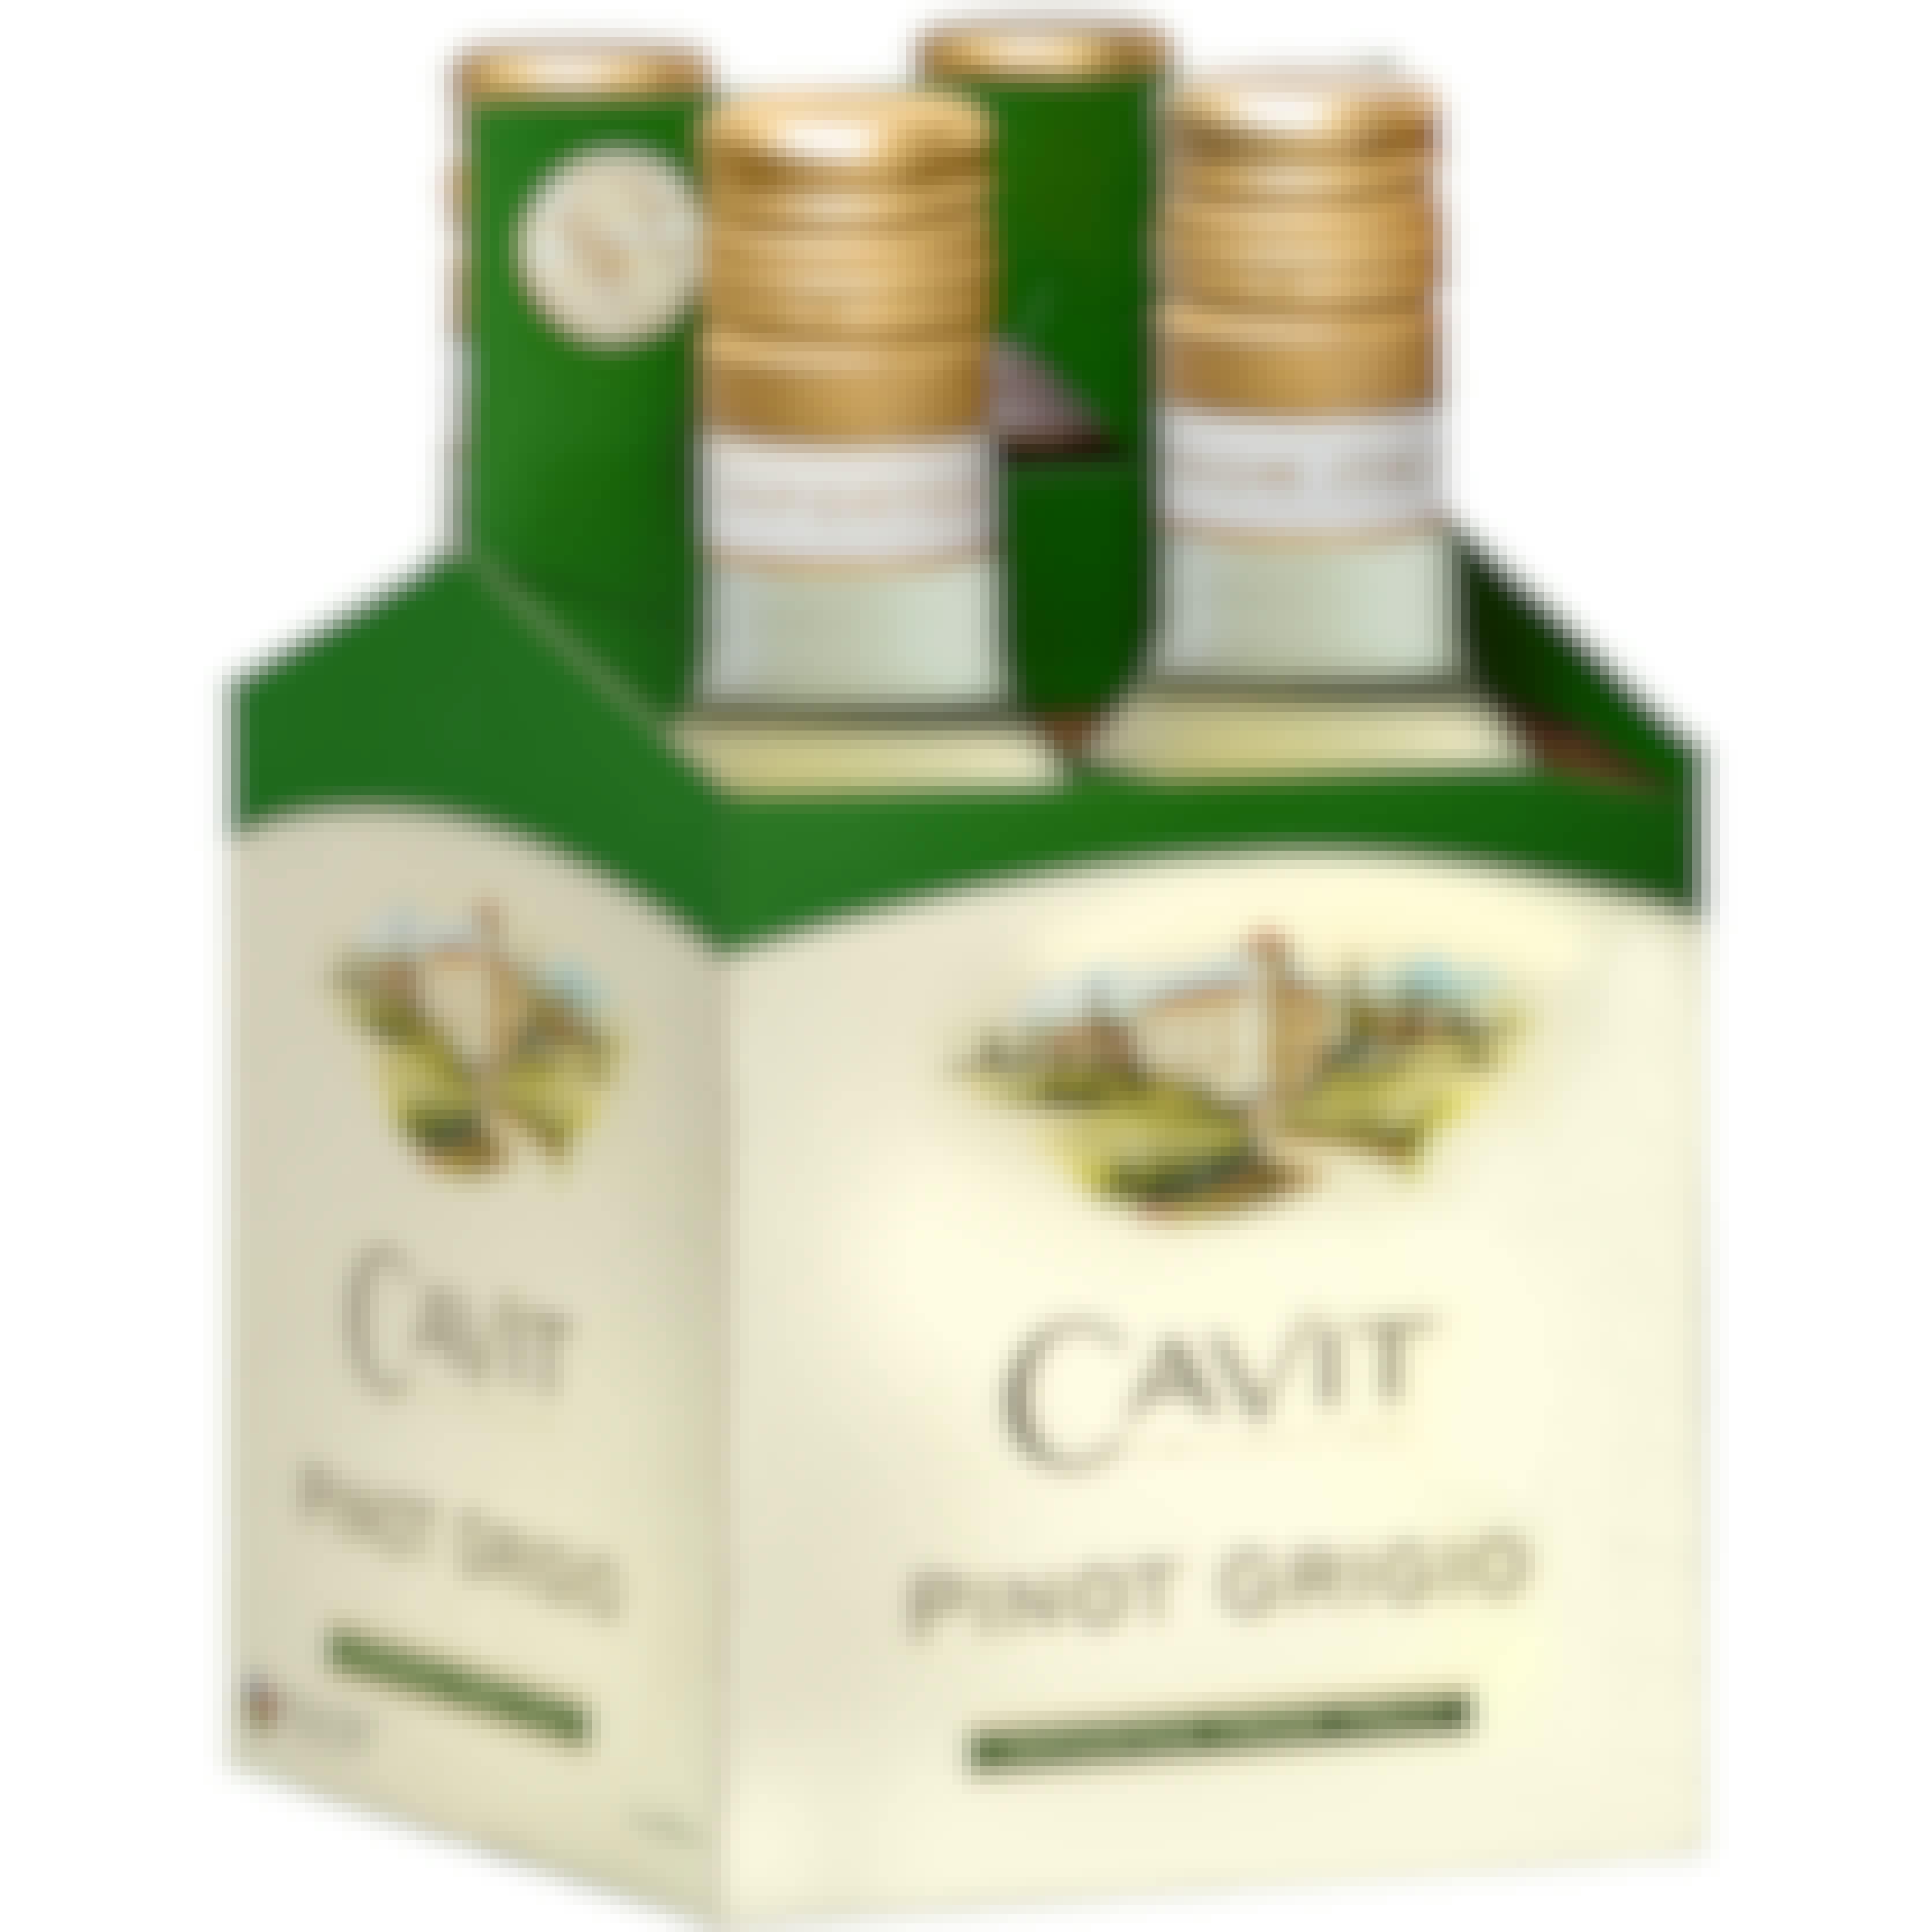 Cavit Pinot Grigio 4 pack 187ml